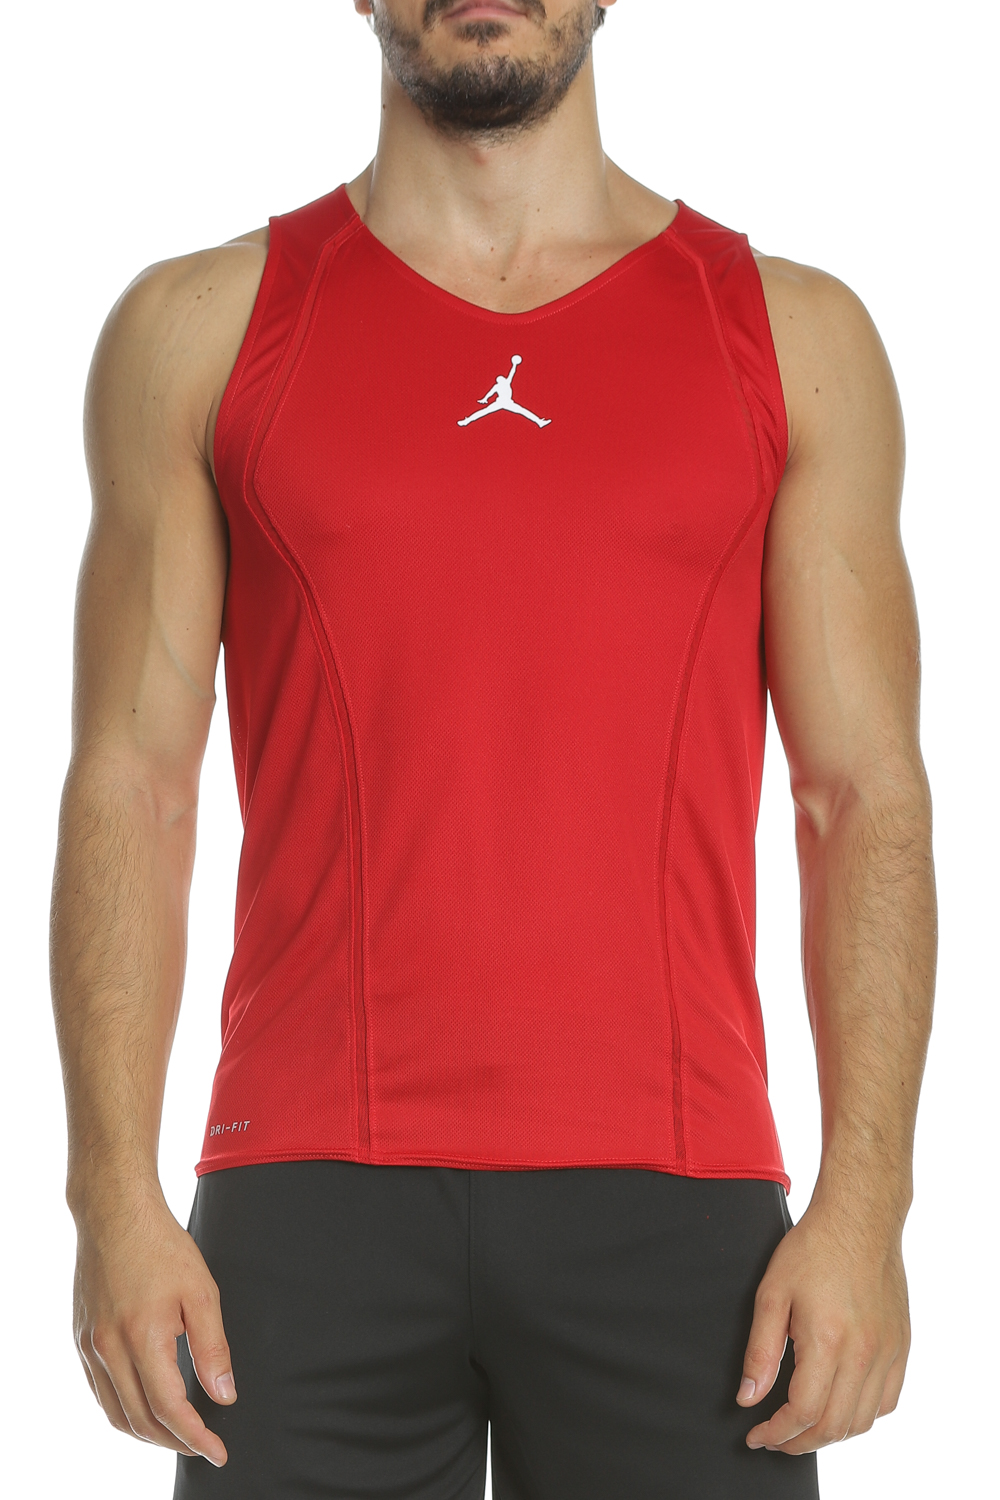 Ανδρικά/Ρούχα/Αθλητικά/T-shirt NIKE - Ανδρική αμάνικη μπλούζα NIKE ULT FLIGHT JERSEY κόκκινη